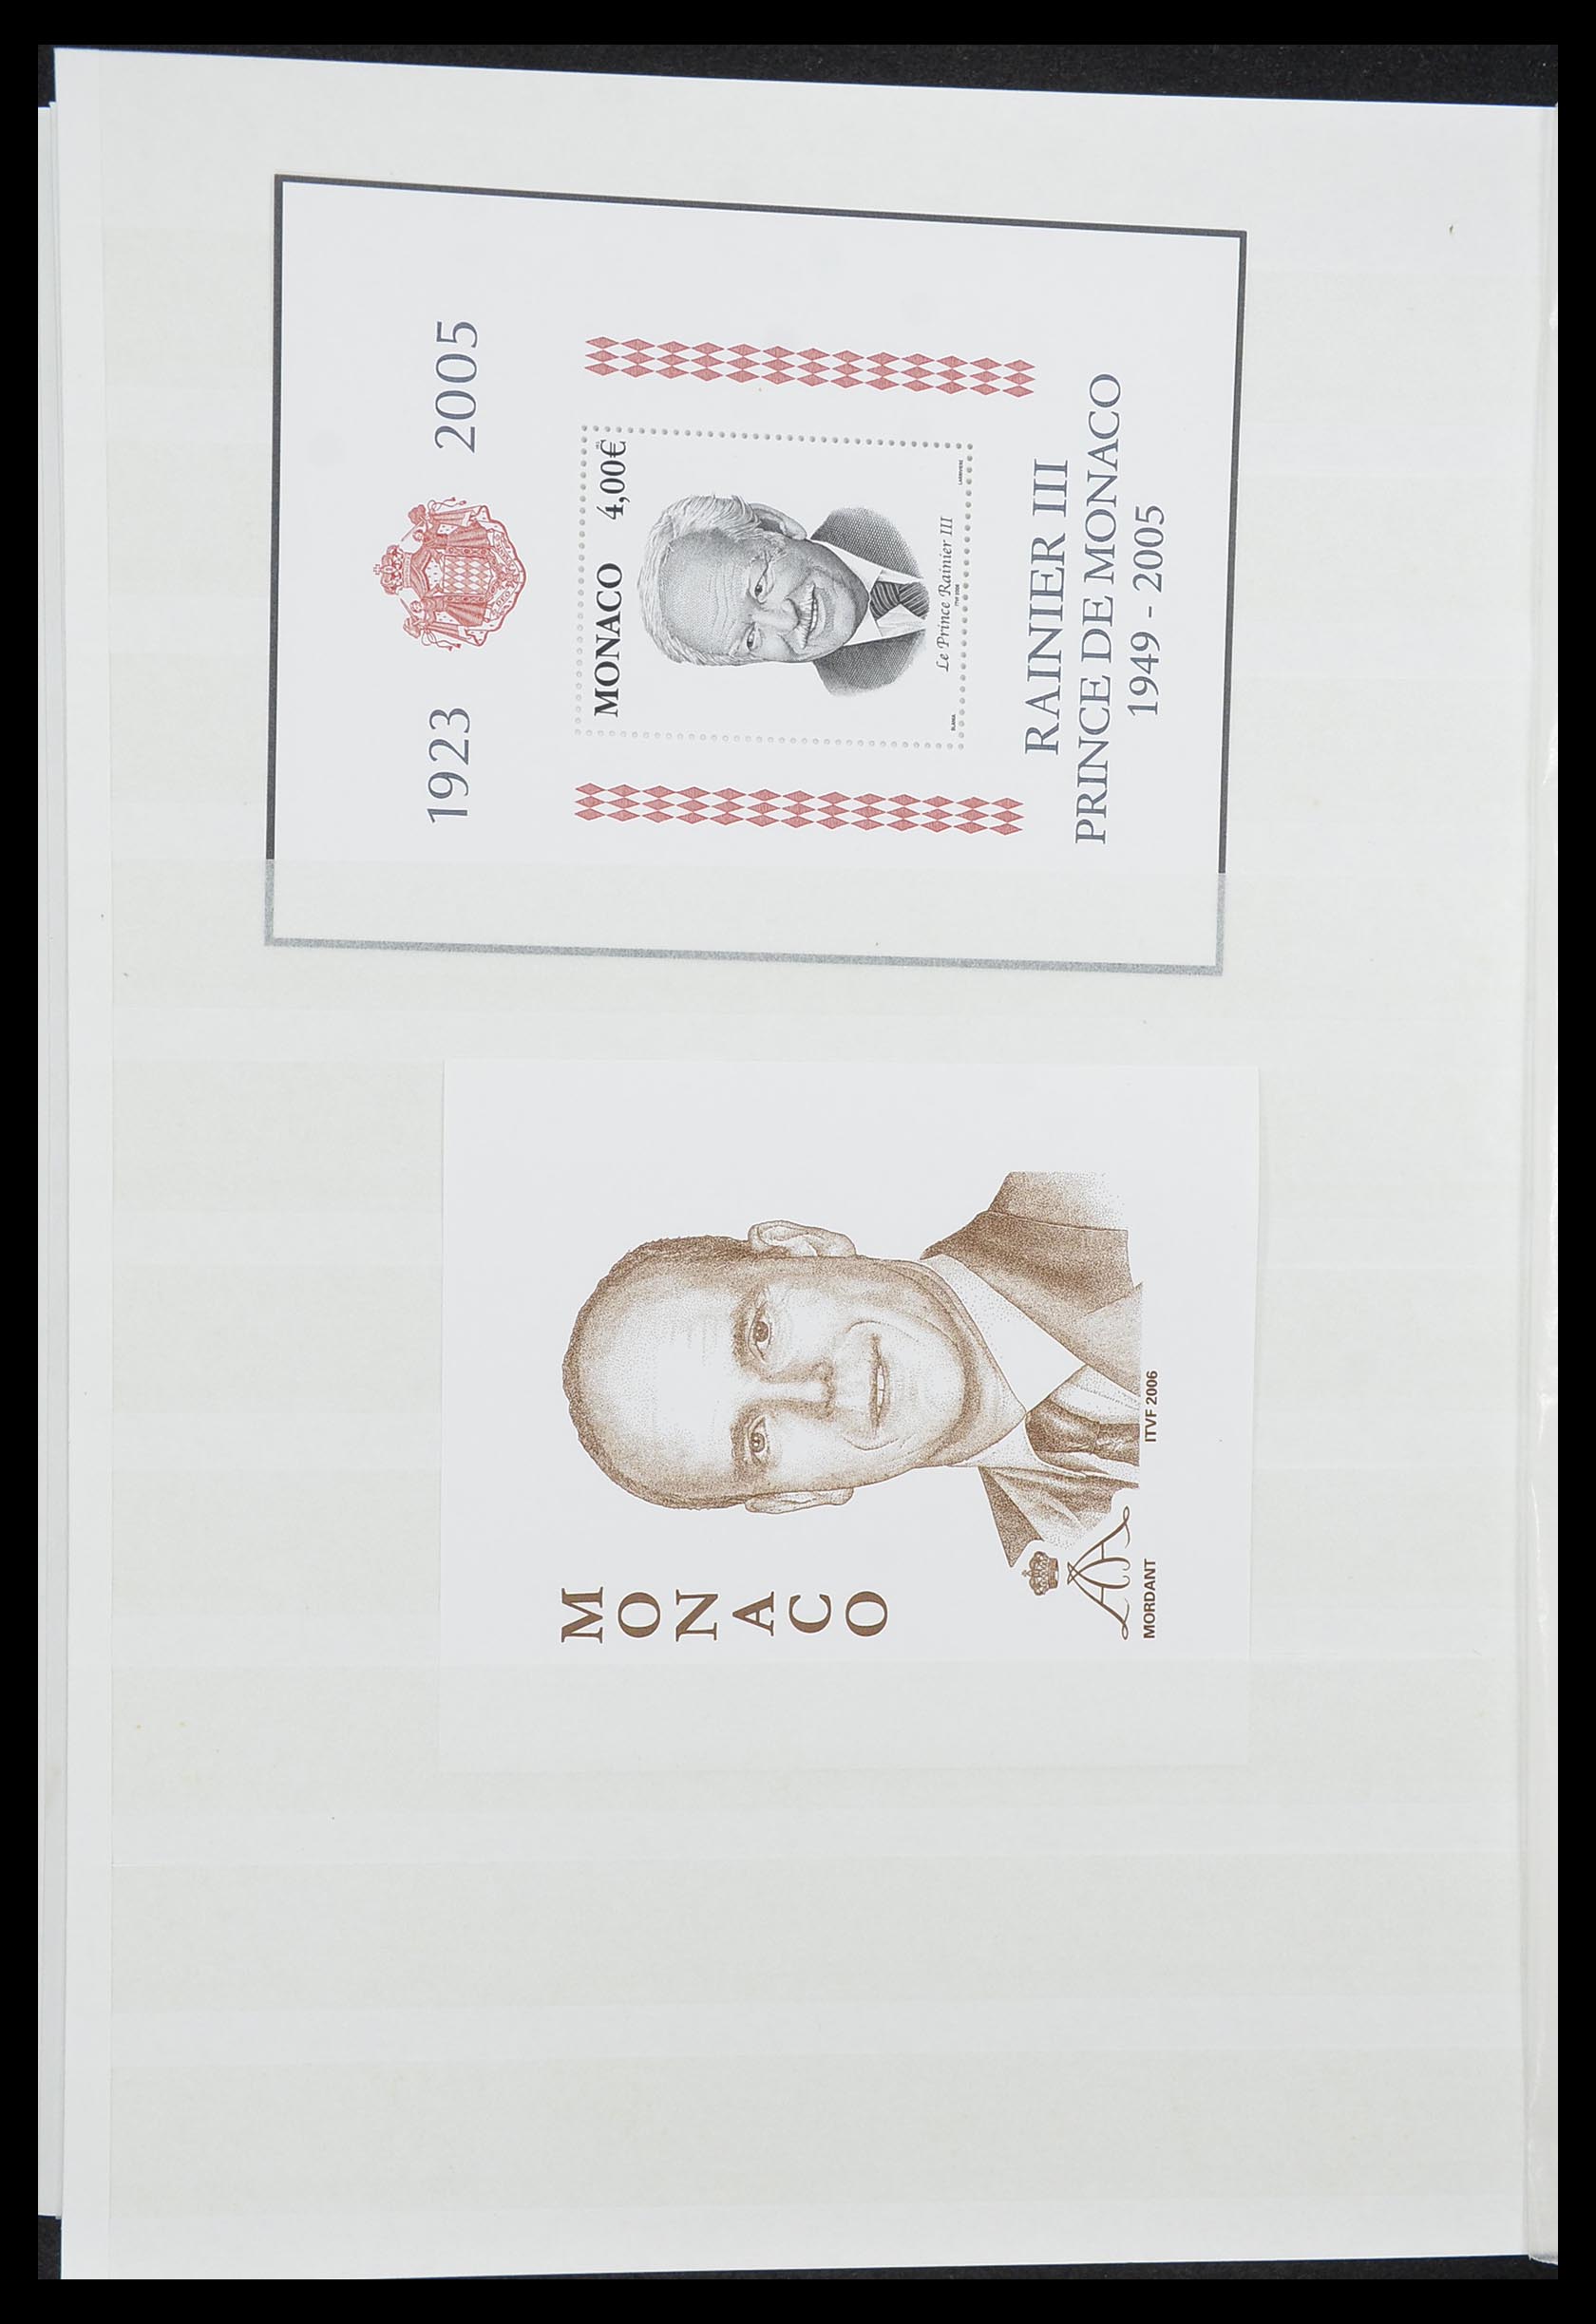 33833 038 - Stamp collection 33833 Monaco souvenir sheets 1979-2015.